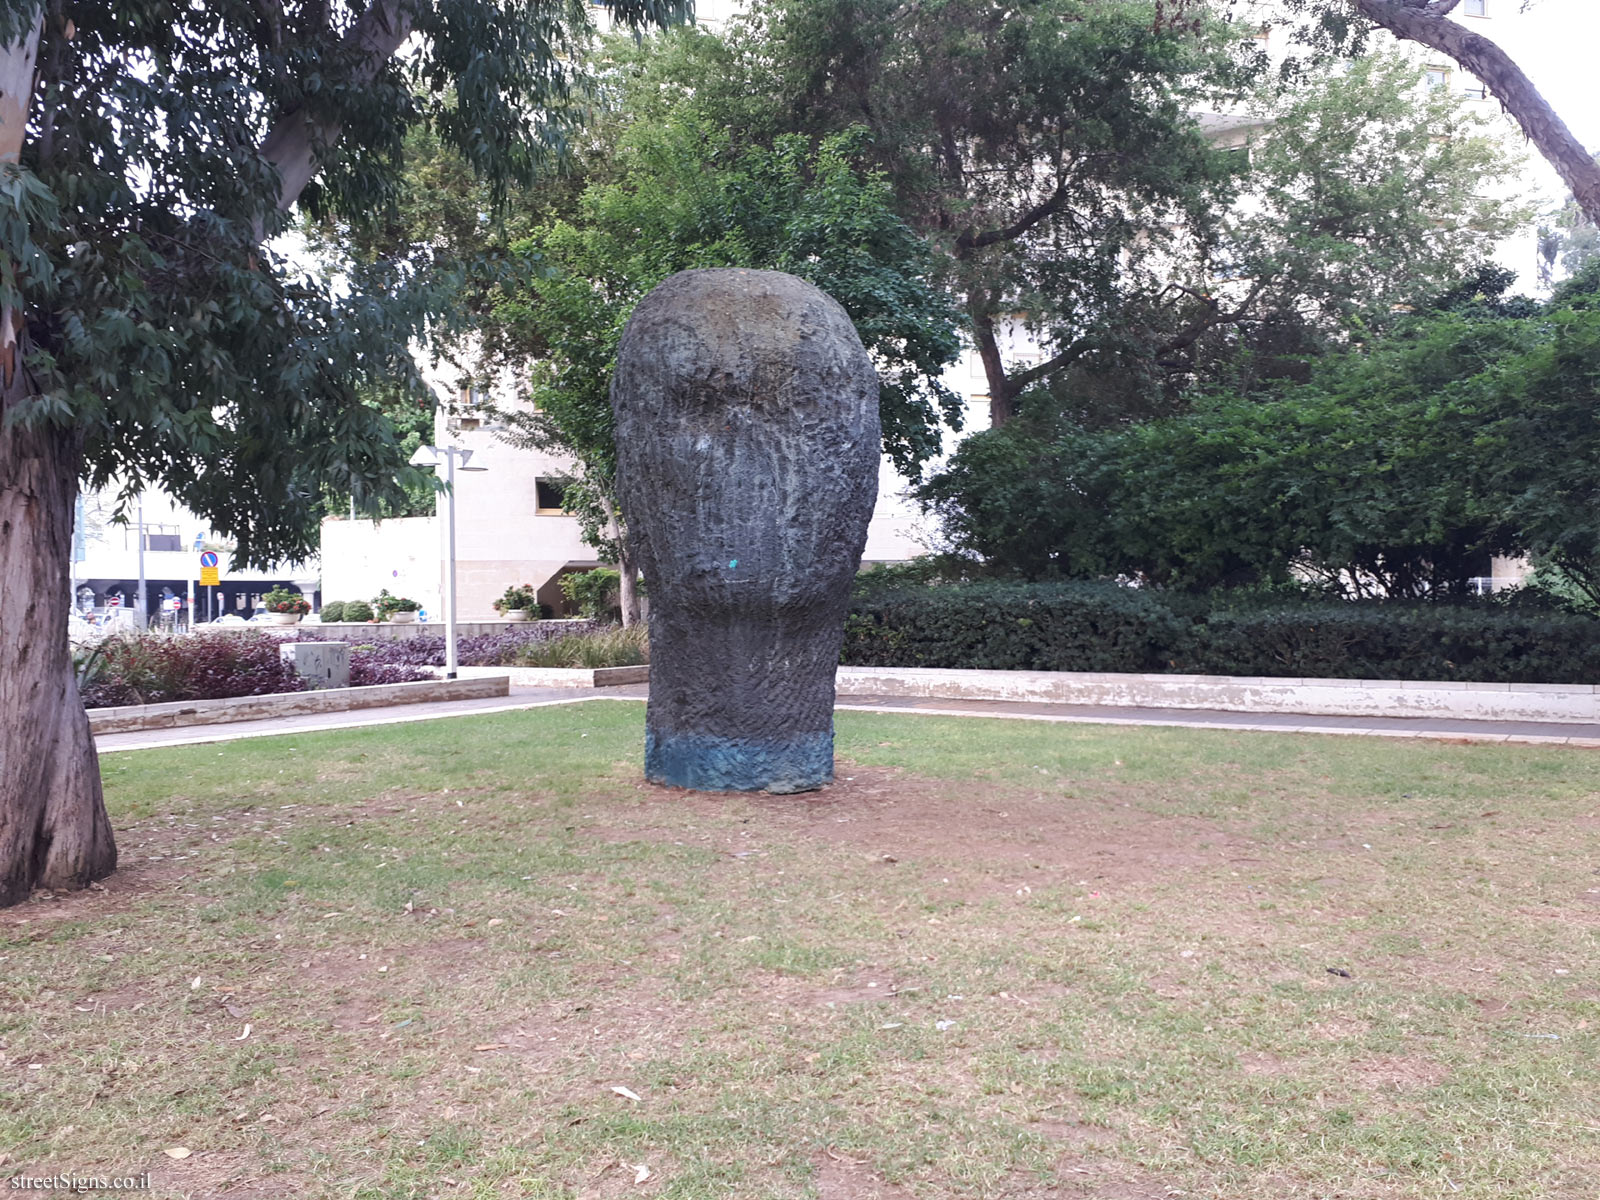 "Head II" - Outdoor sculpture by Ofer Lallouche - Berkovitch St 5, Tel Aviv-Yafo, Israel